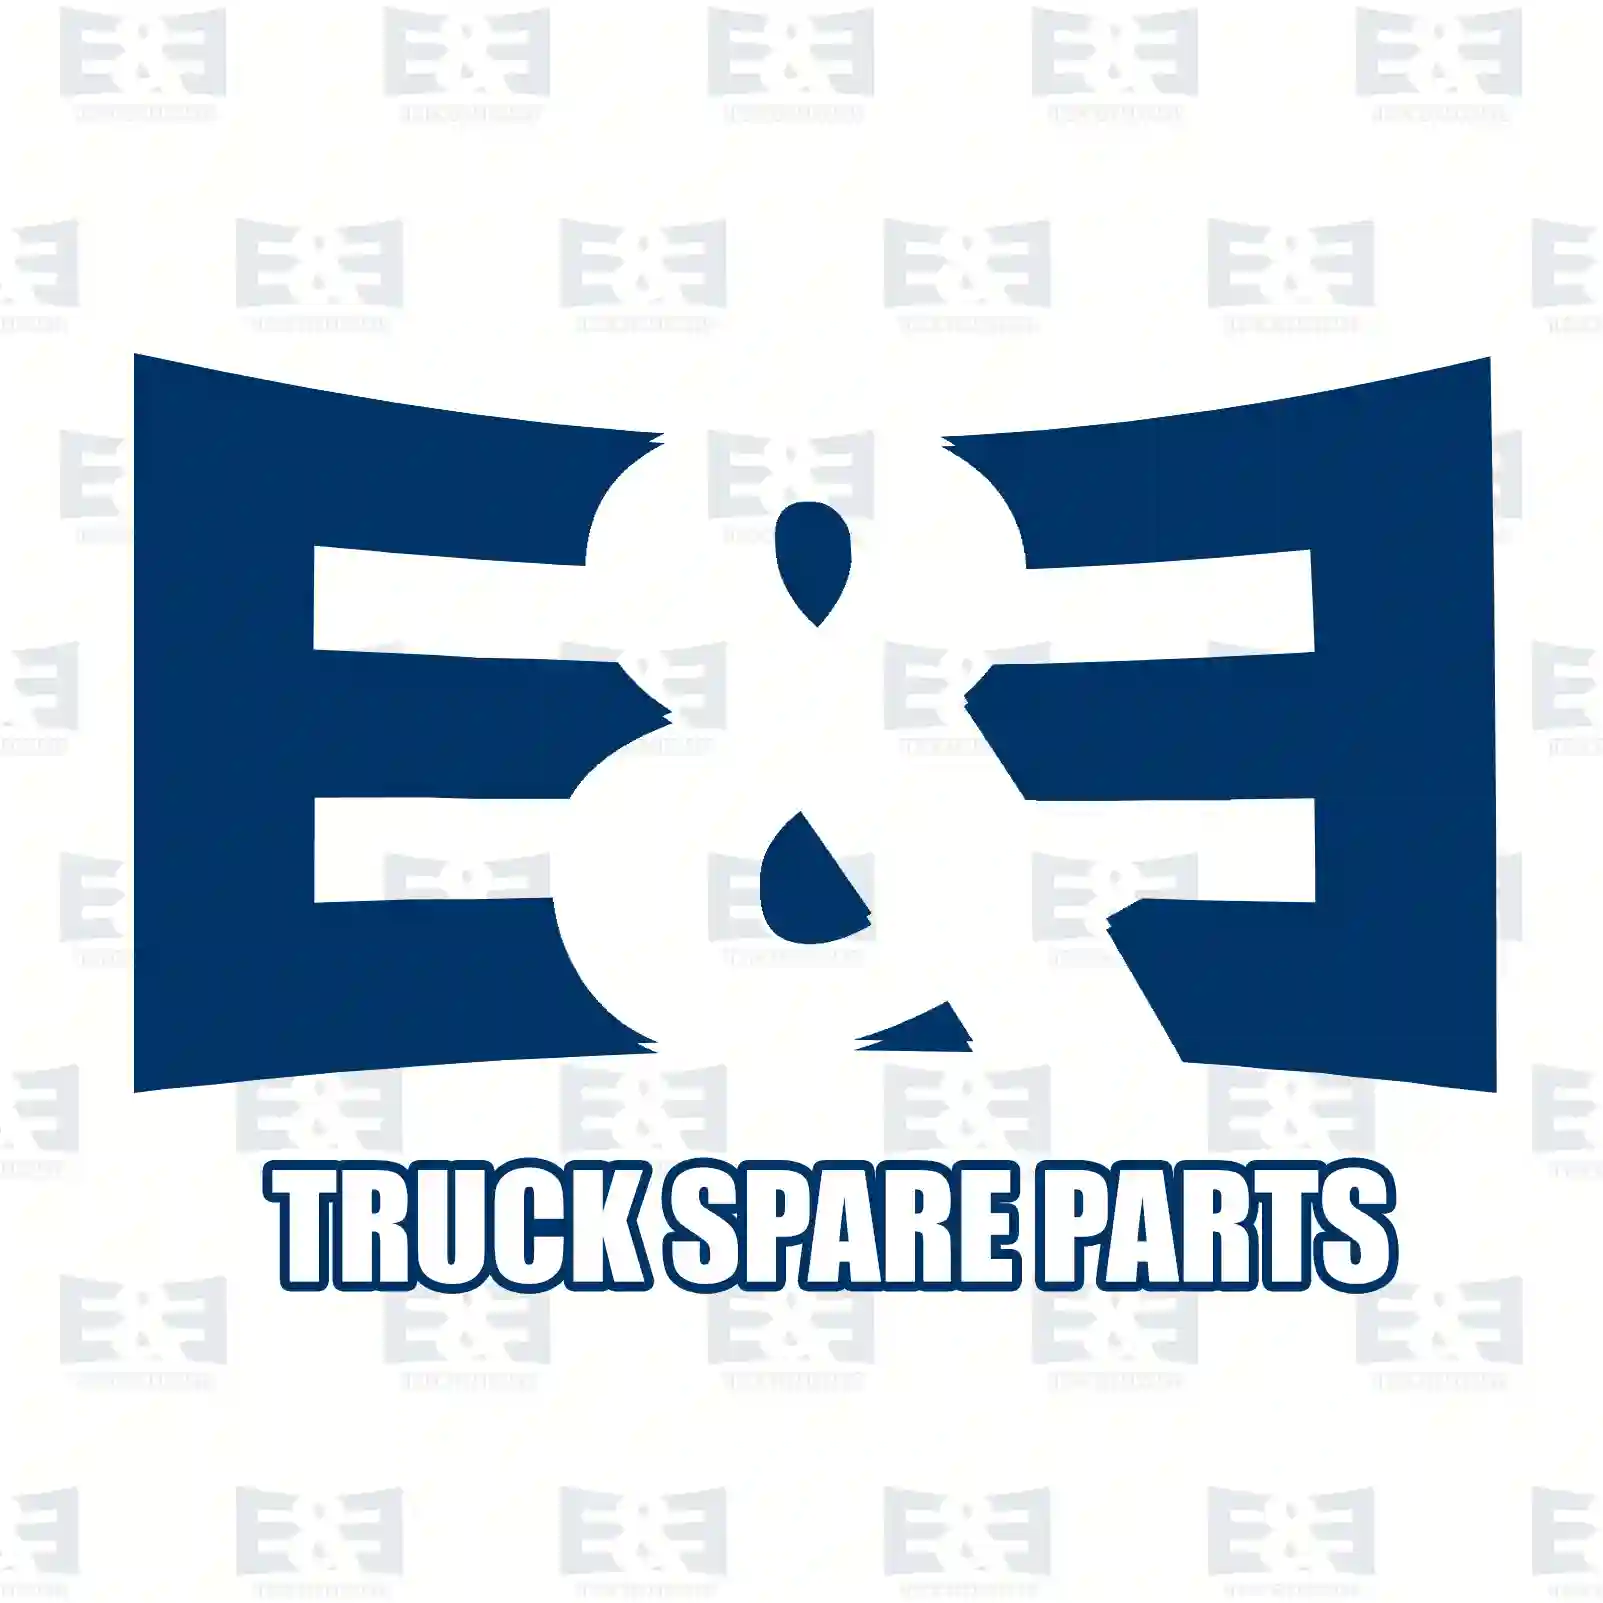 Shock absorber, 2E2283239, 0053261300, 0063260400, , , ||  2E2283239 E&E Truck Spare Parts | Truck Spare Parts, Auotomotive Spare Parts Shock absorber, 2E2283239, 0053261300, 0063260400, , , ||  2E2283239 E&E Truck Spare Parts | Truck Spare Parts, Auotomotive Spare Parts